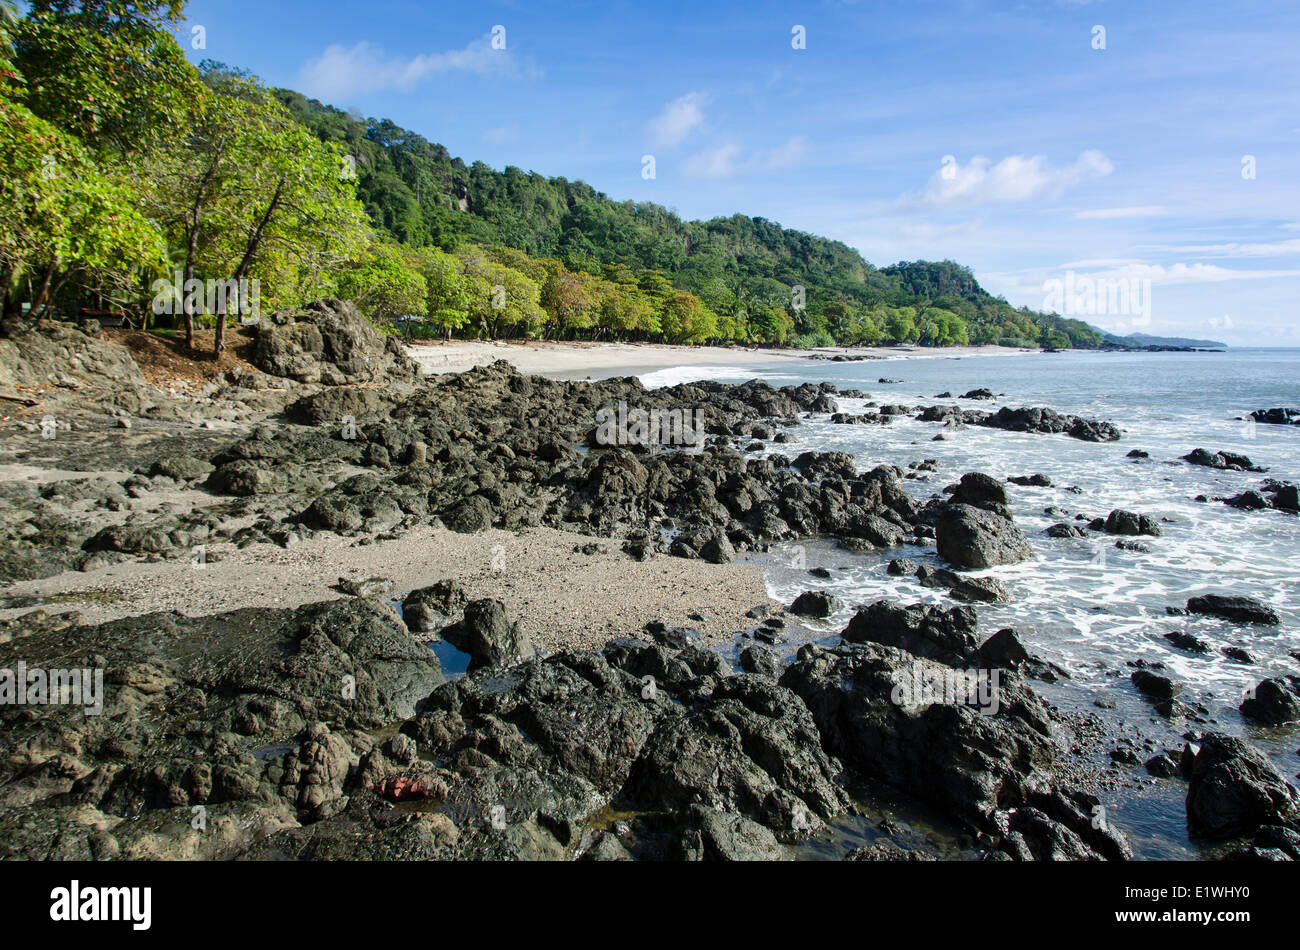 La plage de Montezuma, dans la province de Puntarenas, Costa Rica Banque D'Images